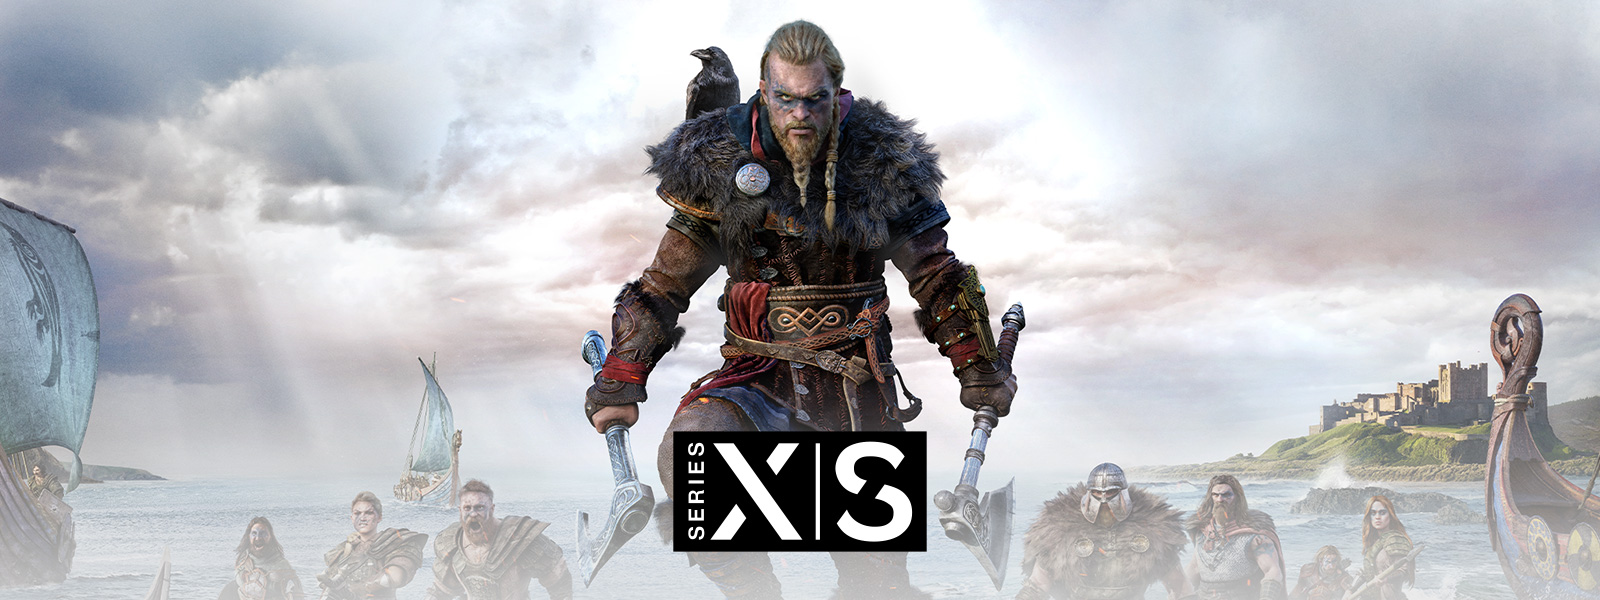 Assassin's Creed Valhalla, Xbox Series X|S, legendárny viking Eivor vedie svoju armádu do bitky.